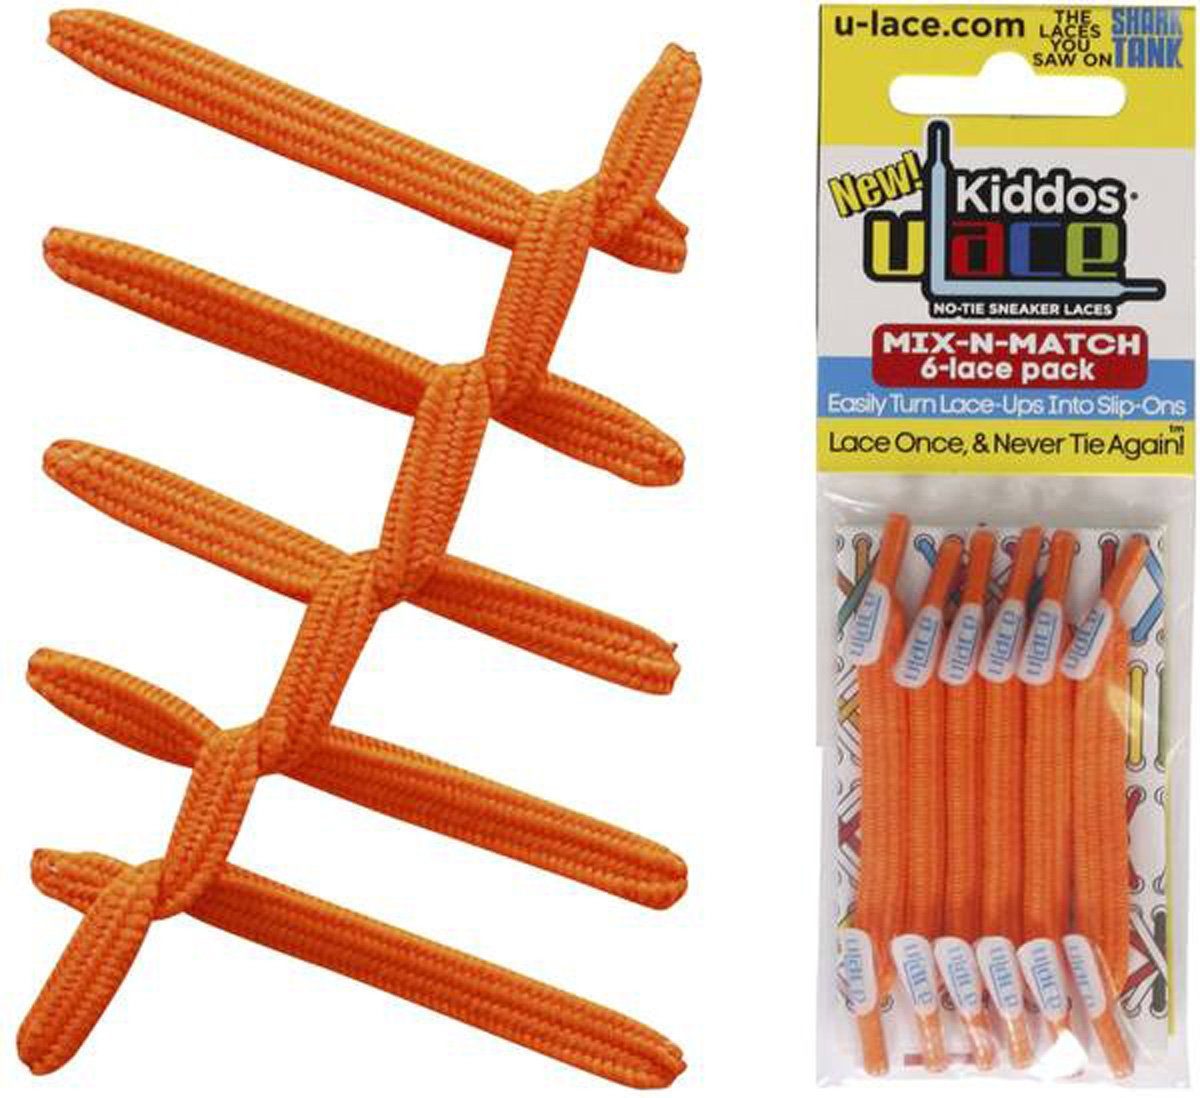 U-Laces Schnürsenkel Kiddos - elastische Schnürsenkel mit Wiederhaken für Kinder Neon Orange